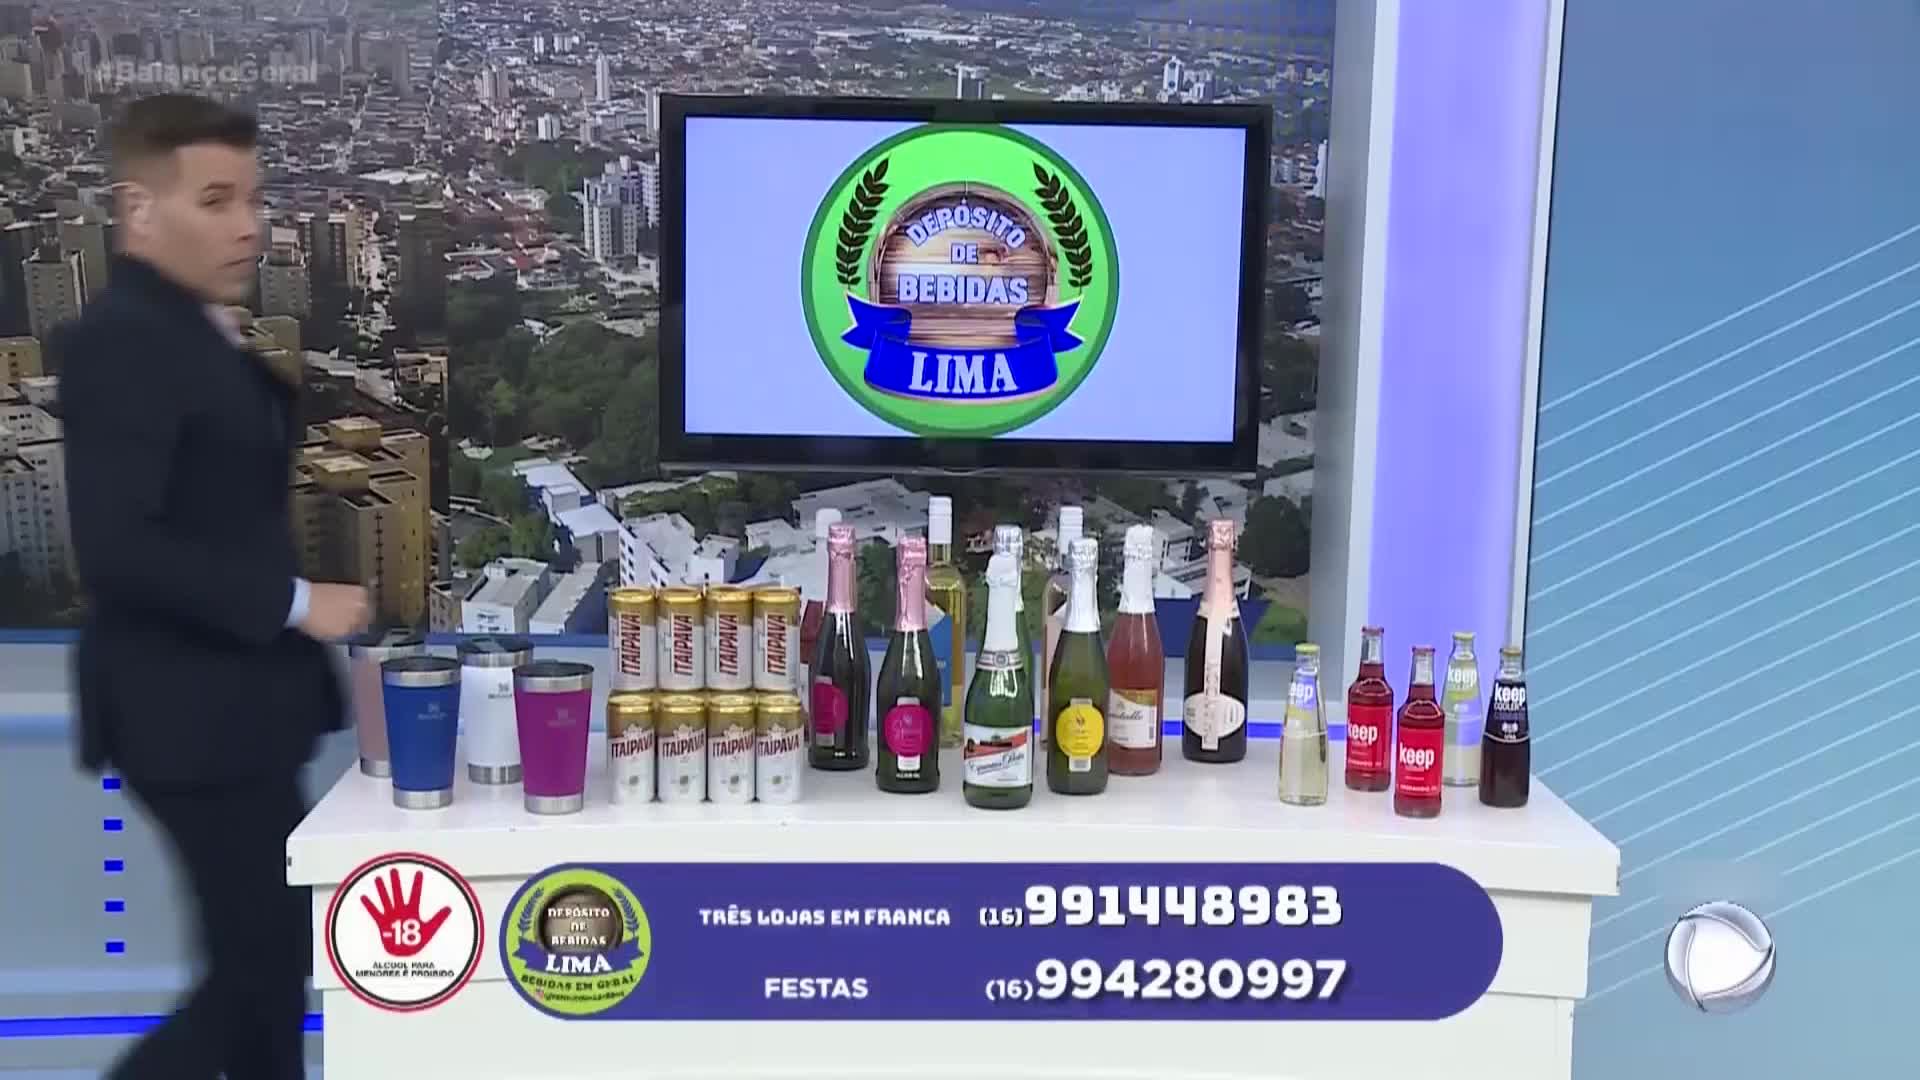 Vídeo: Depósito de Bebidas Lima - Balanço Geral - Exibido em 30/12/2022